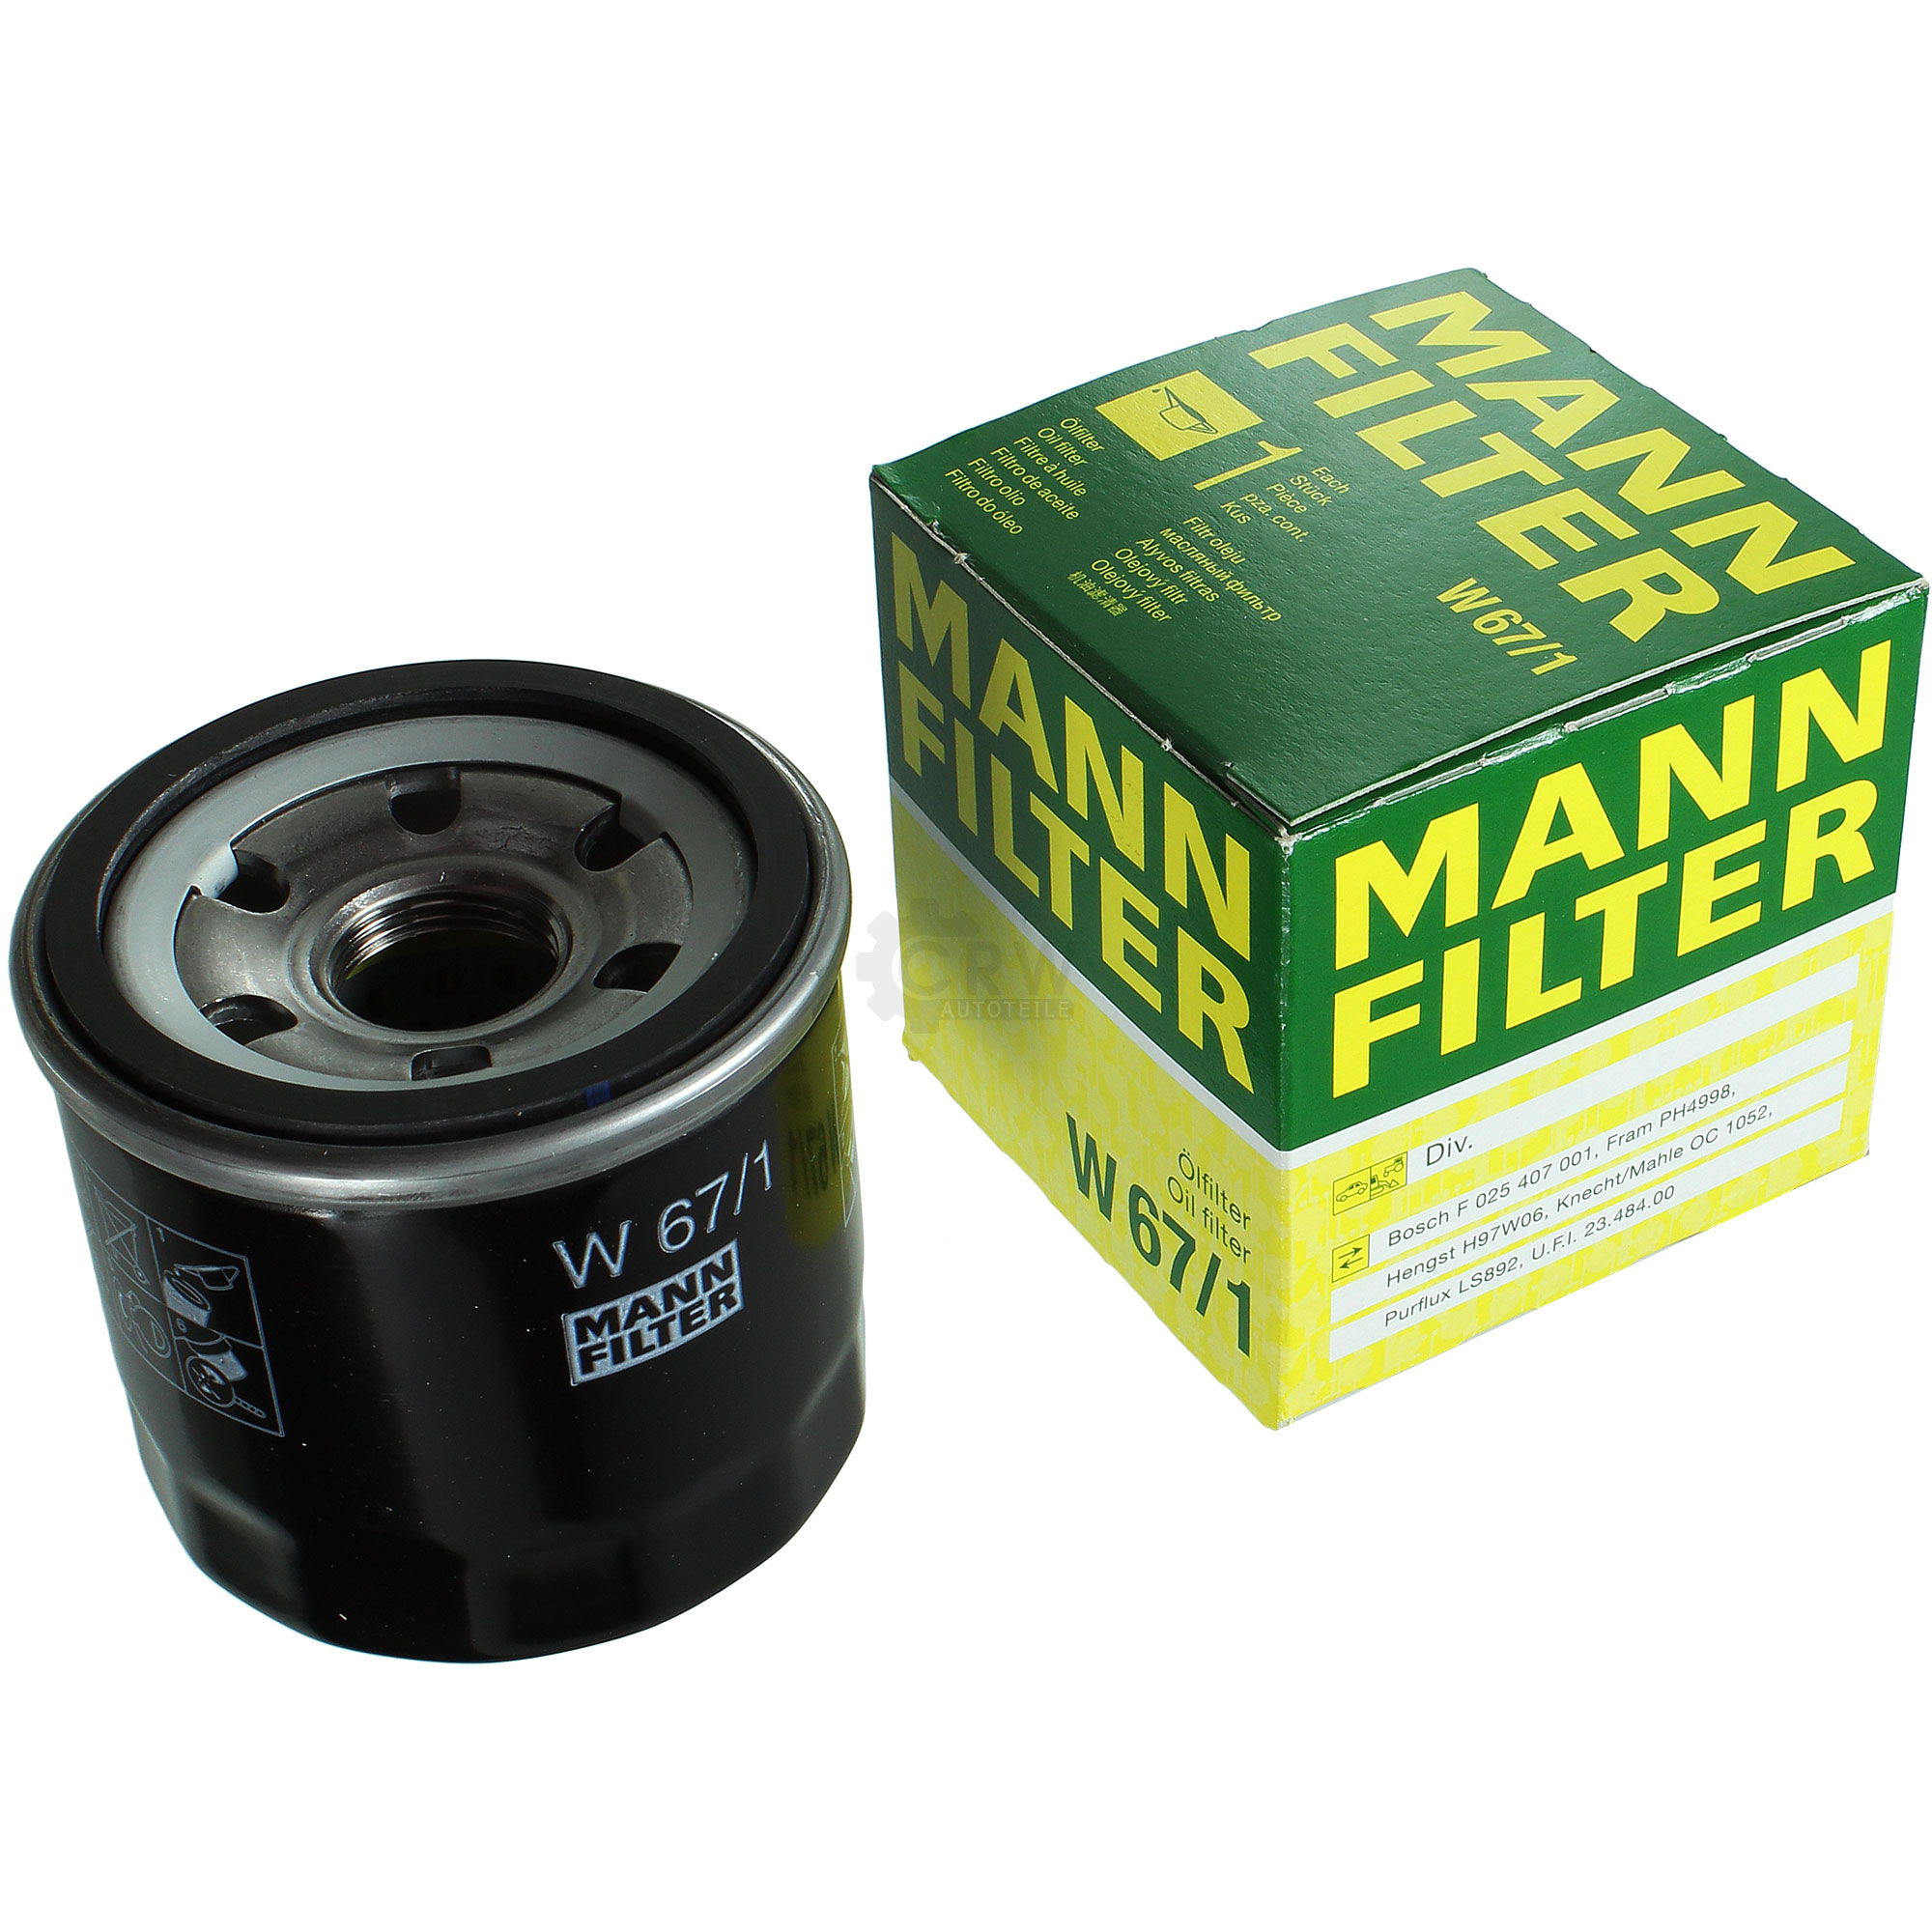 W67 1 фильтр масляный. Mann фильтр масляный Mann w67. Фильтр масляный Mann w 67/2. Фильтр Mann 67/1. Mann-Filter w 67/1.